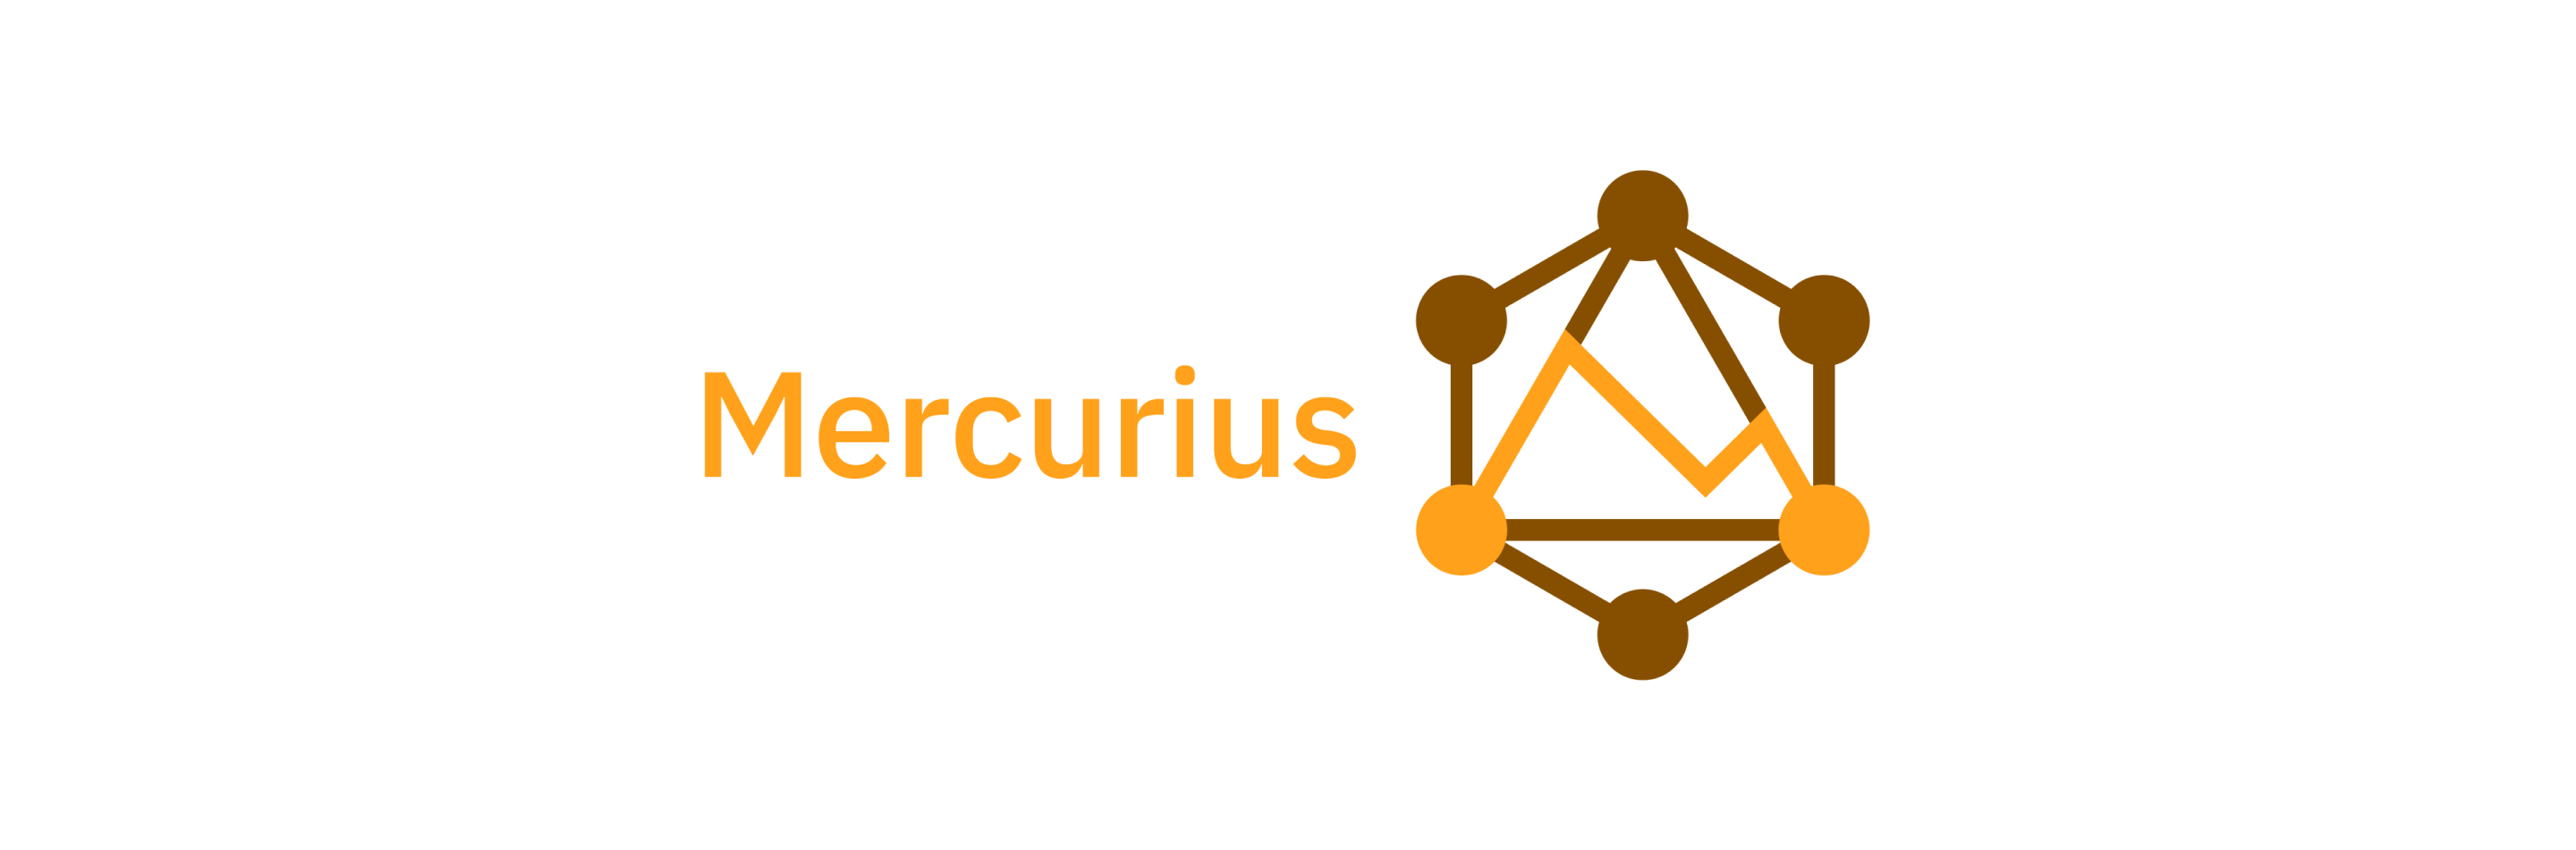 mercurius-logo